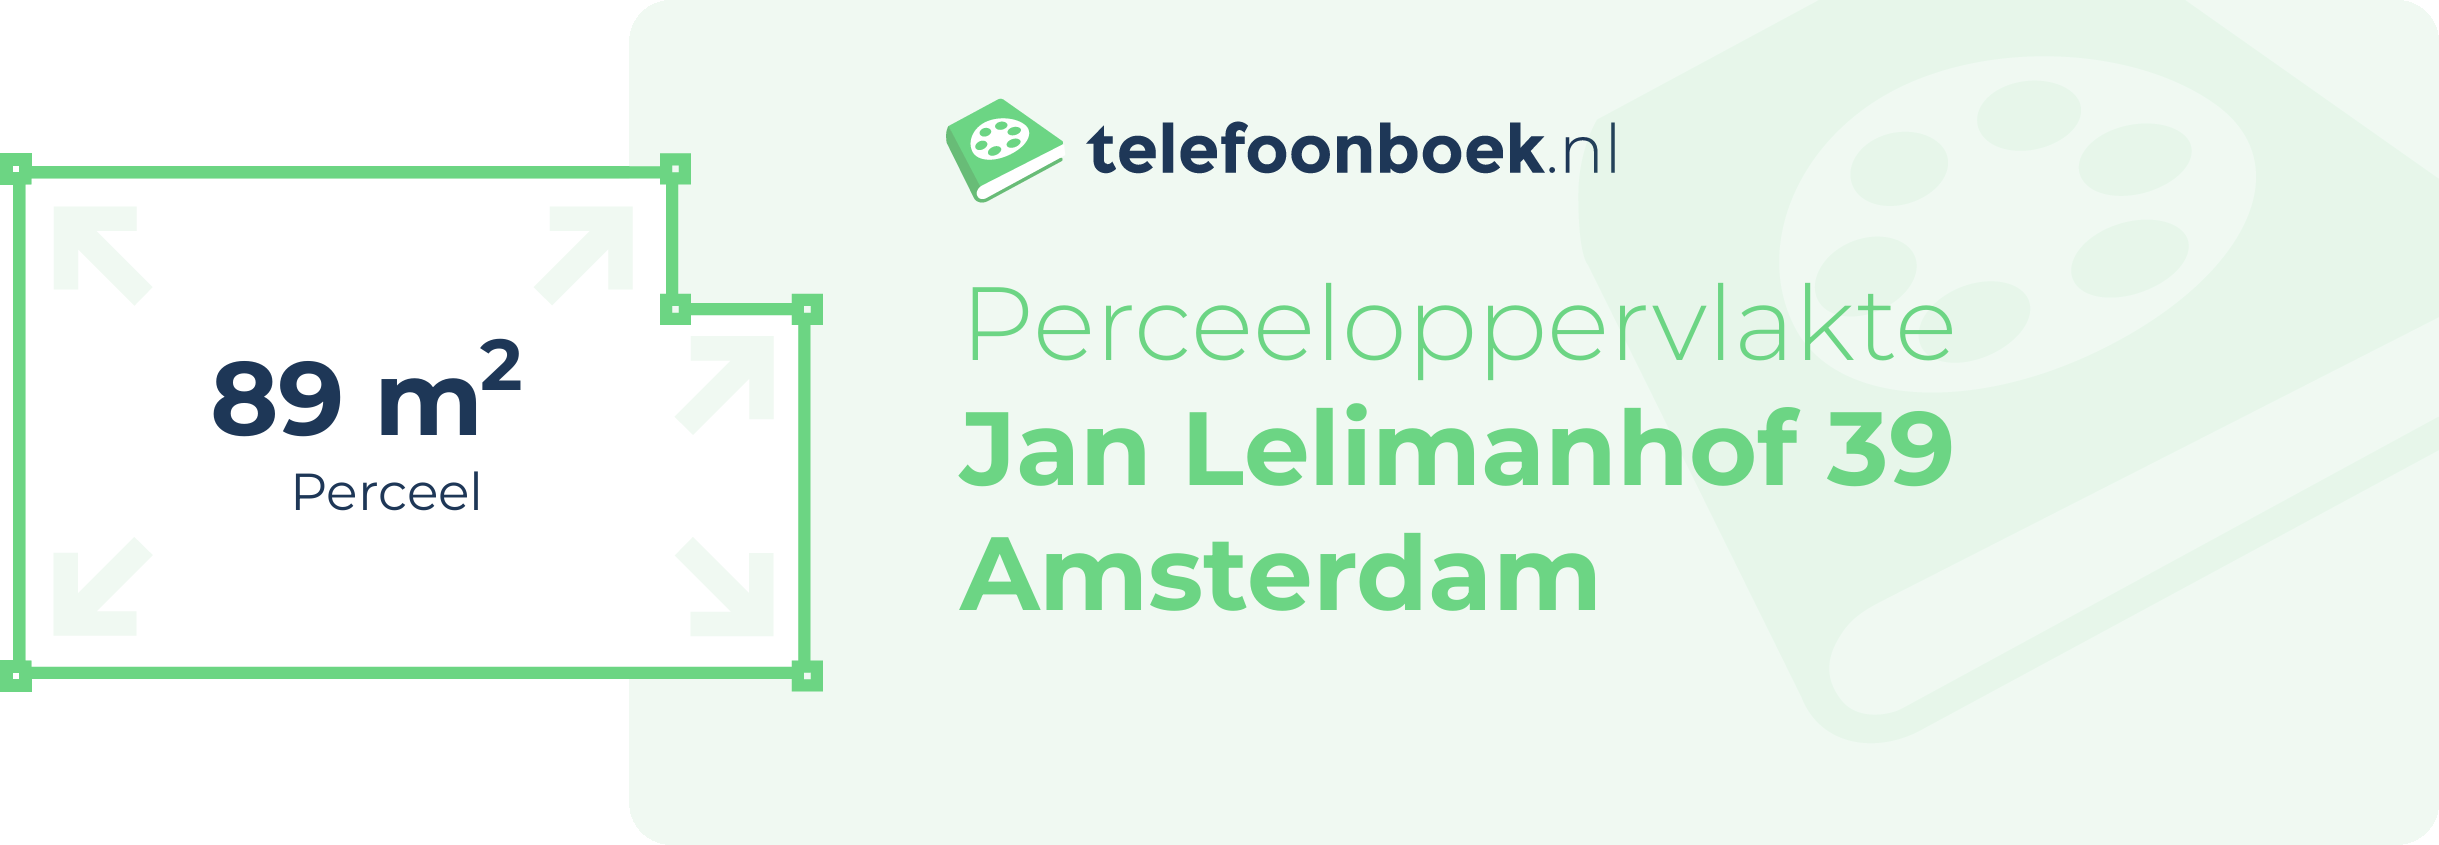 Perceeloppervlakte Jan Lelimanhof 39 Amsterdam